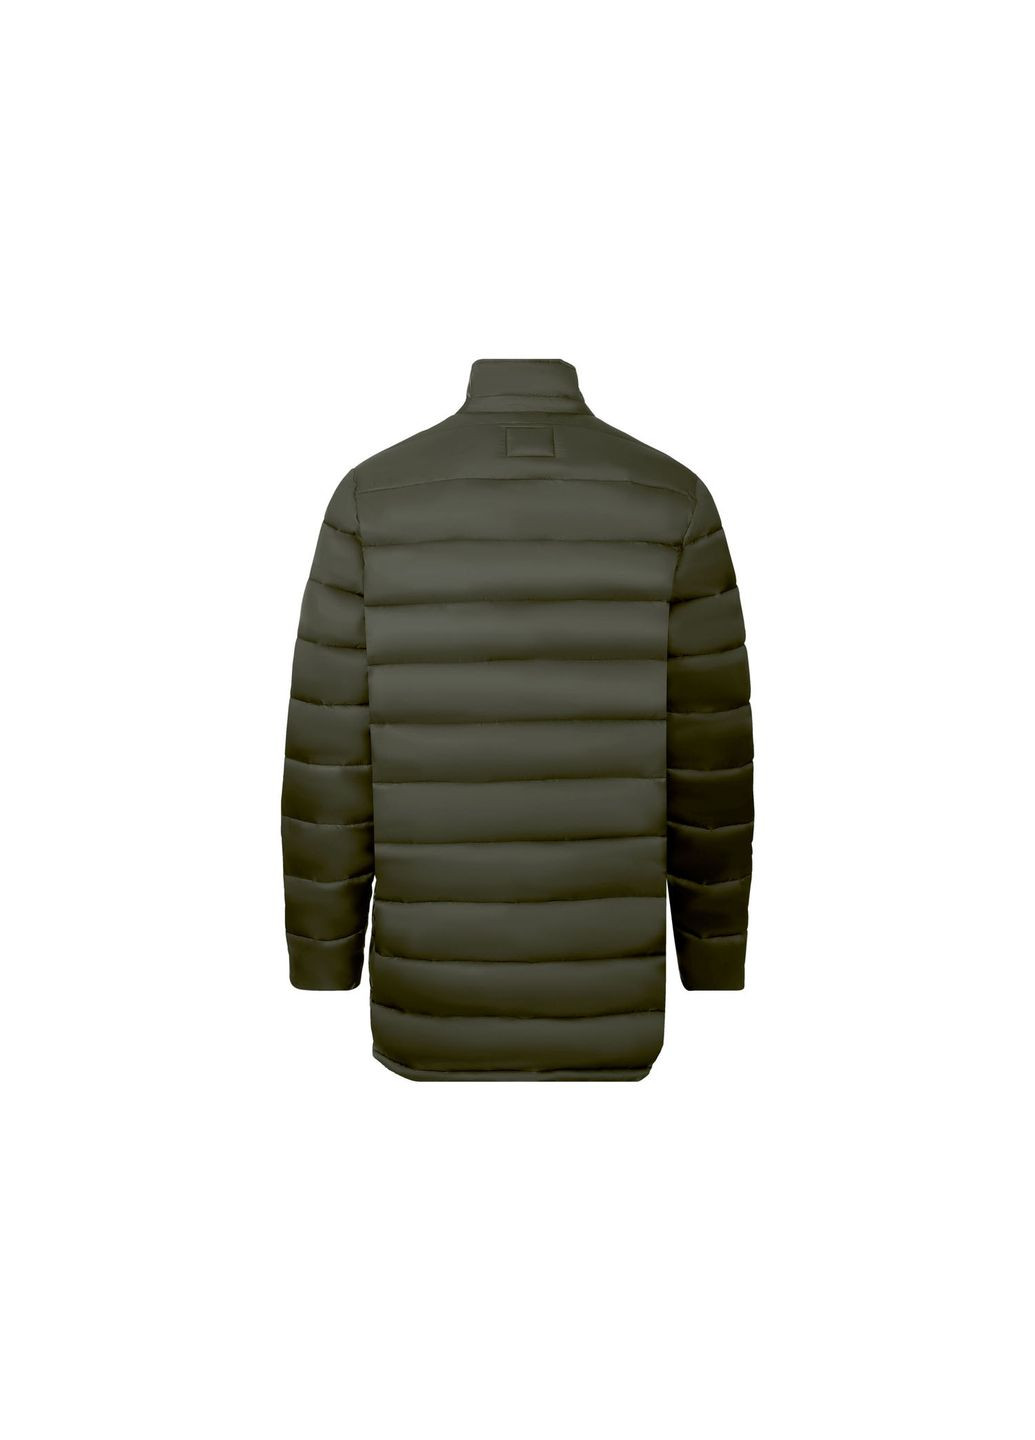 Оливковая (хаки) демисезонная куртка демисезонная водоотталкивающая и ветрозащитная для мужчины 357762 Livergy